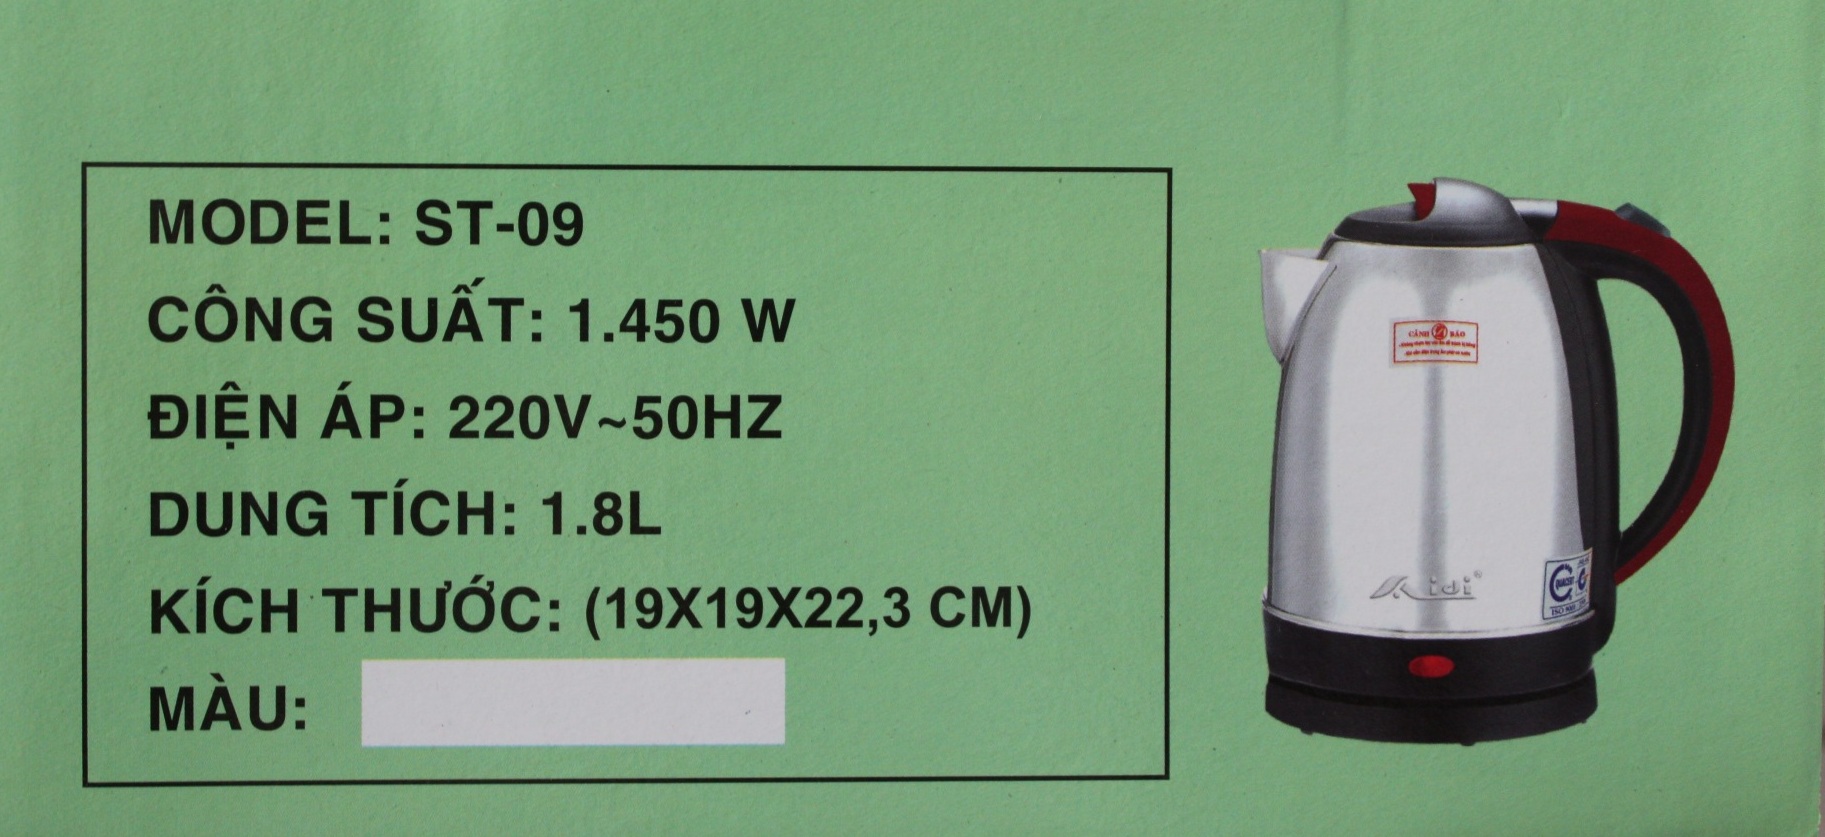 Ấm điện siêu tốc Aidi 304 ST-09 (1.8 lít) - Màu Ngẫu Nhiên - Hàng Chính Hãng